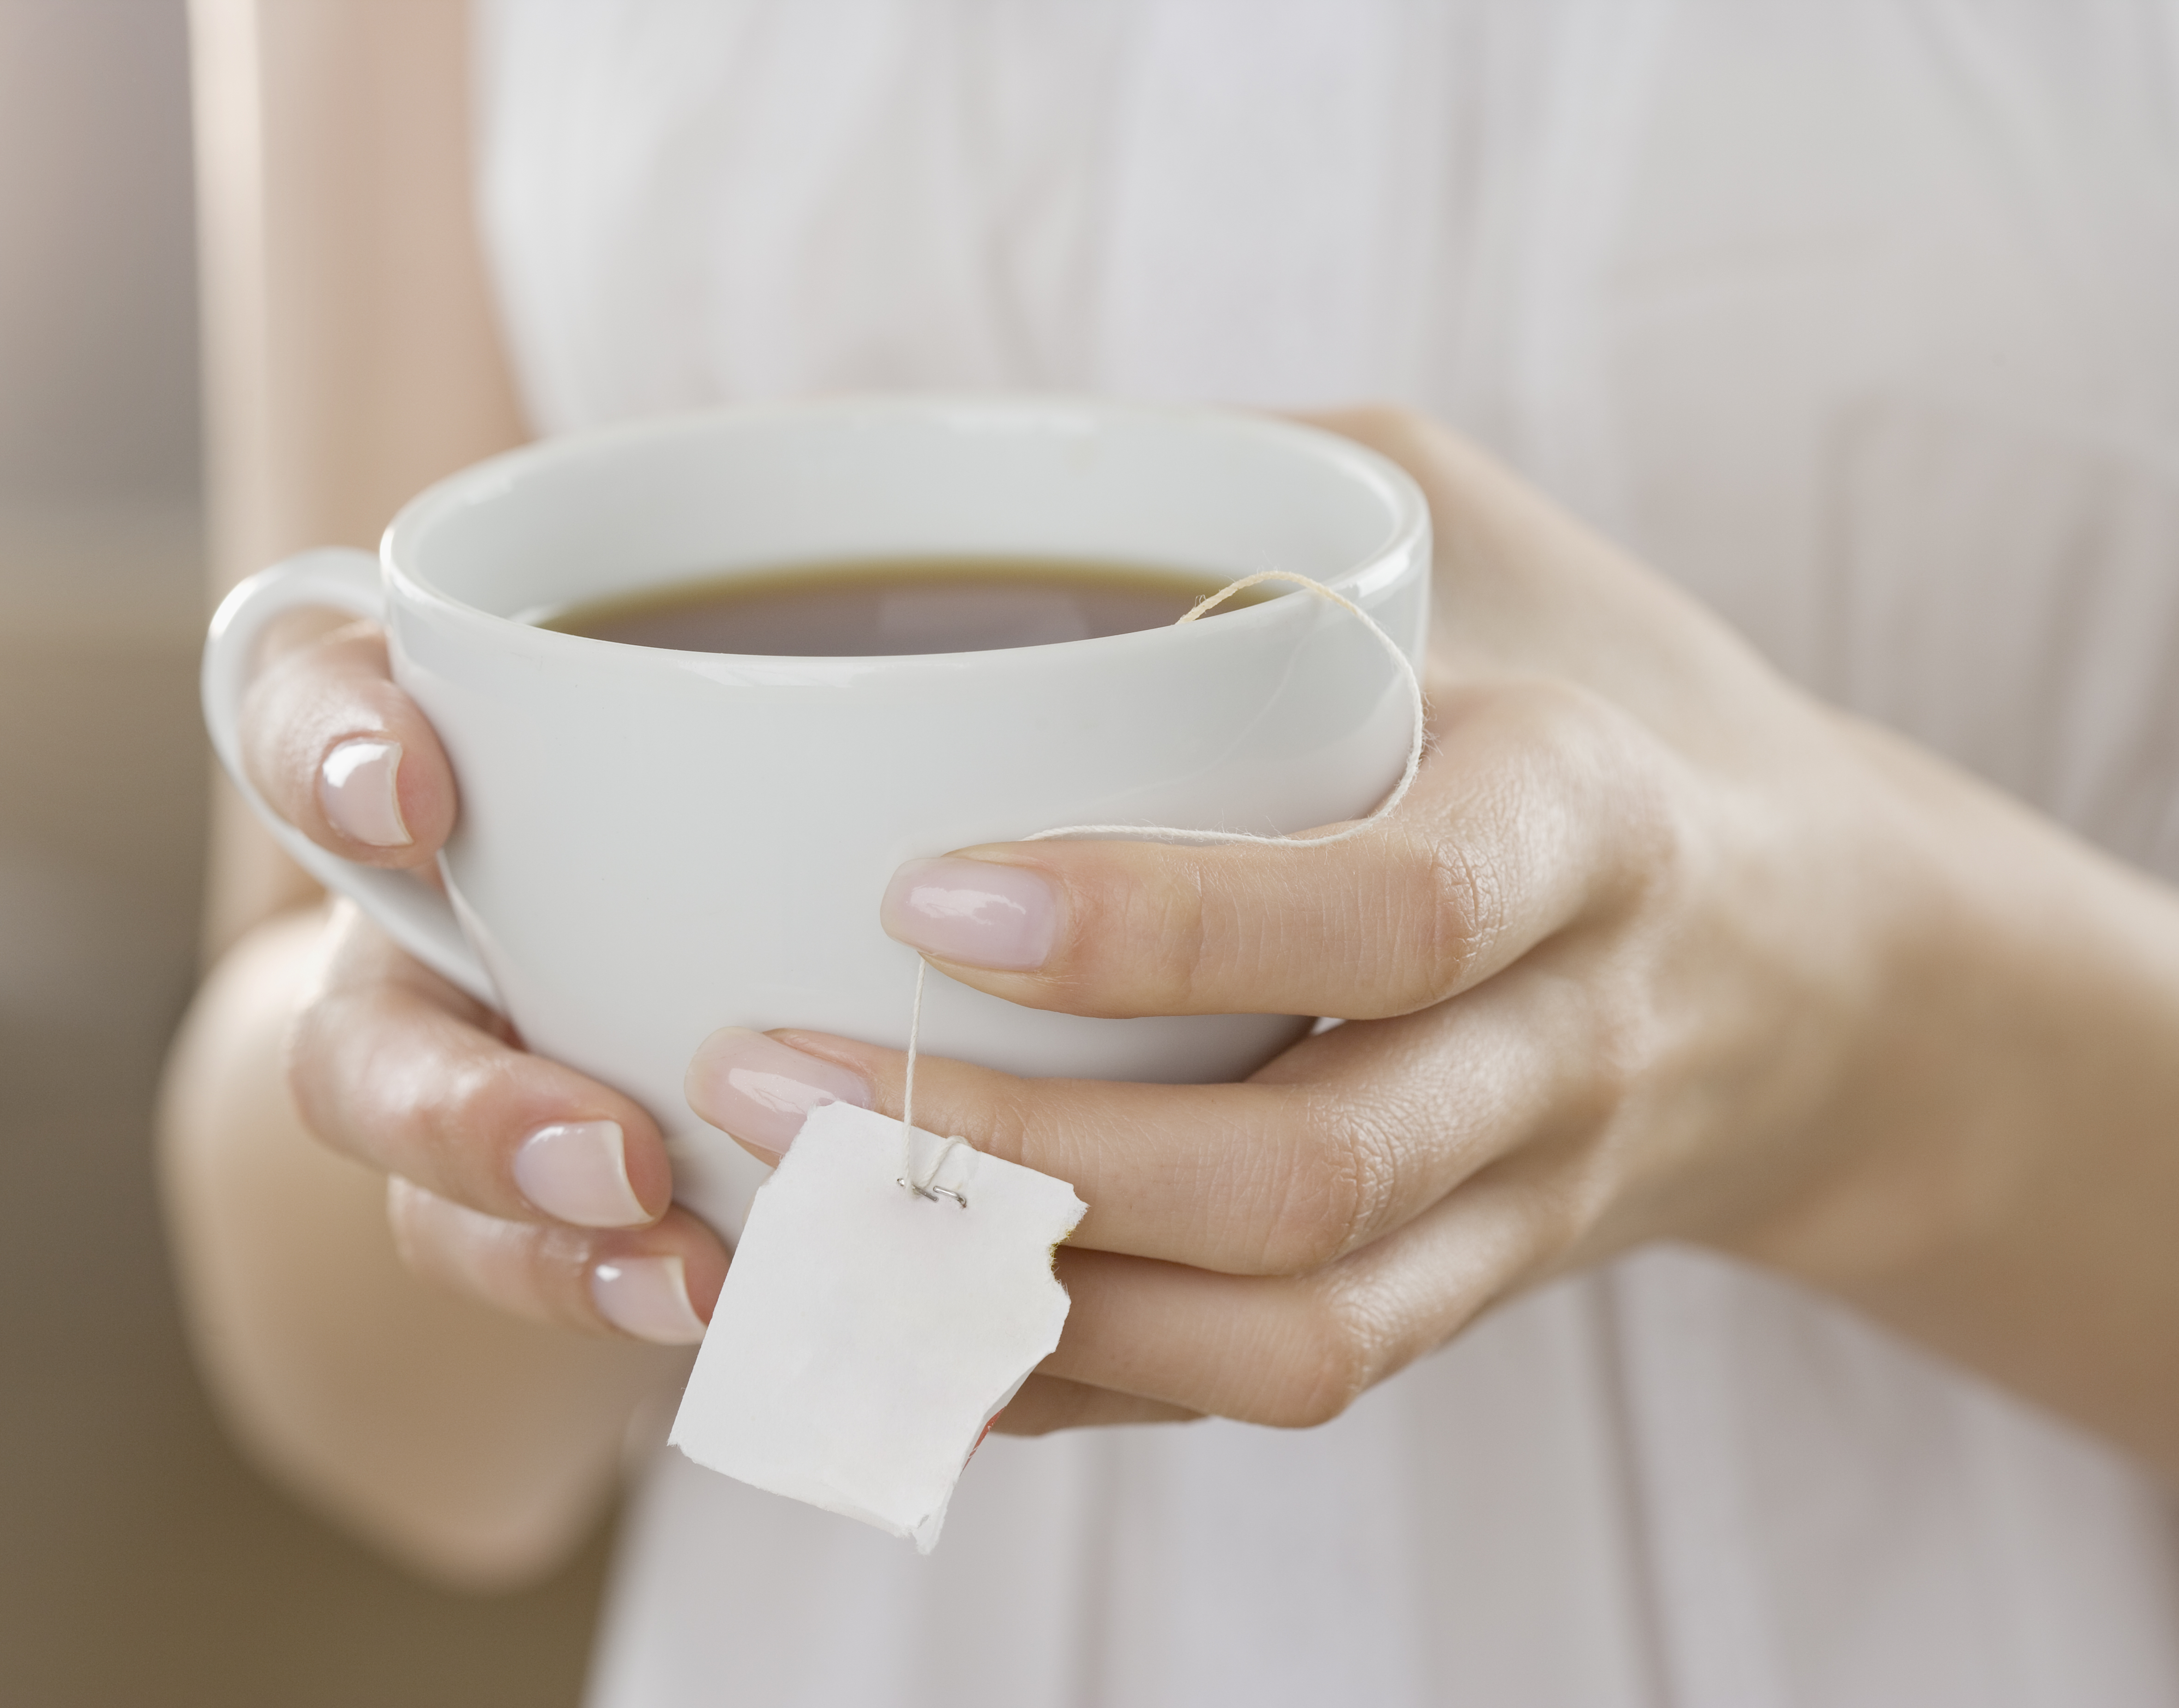 Napi 4 csésze tea megelőzheti a cukorbetegséget - Blikk Rúzs